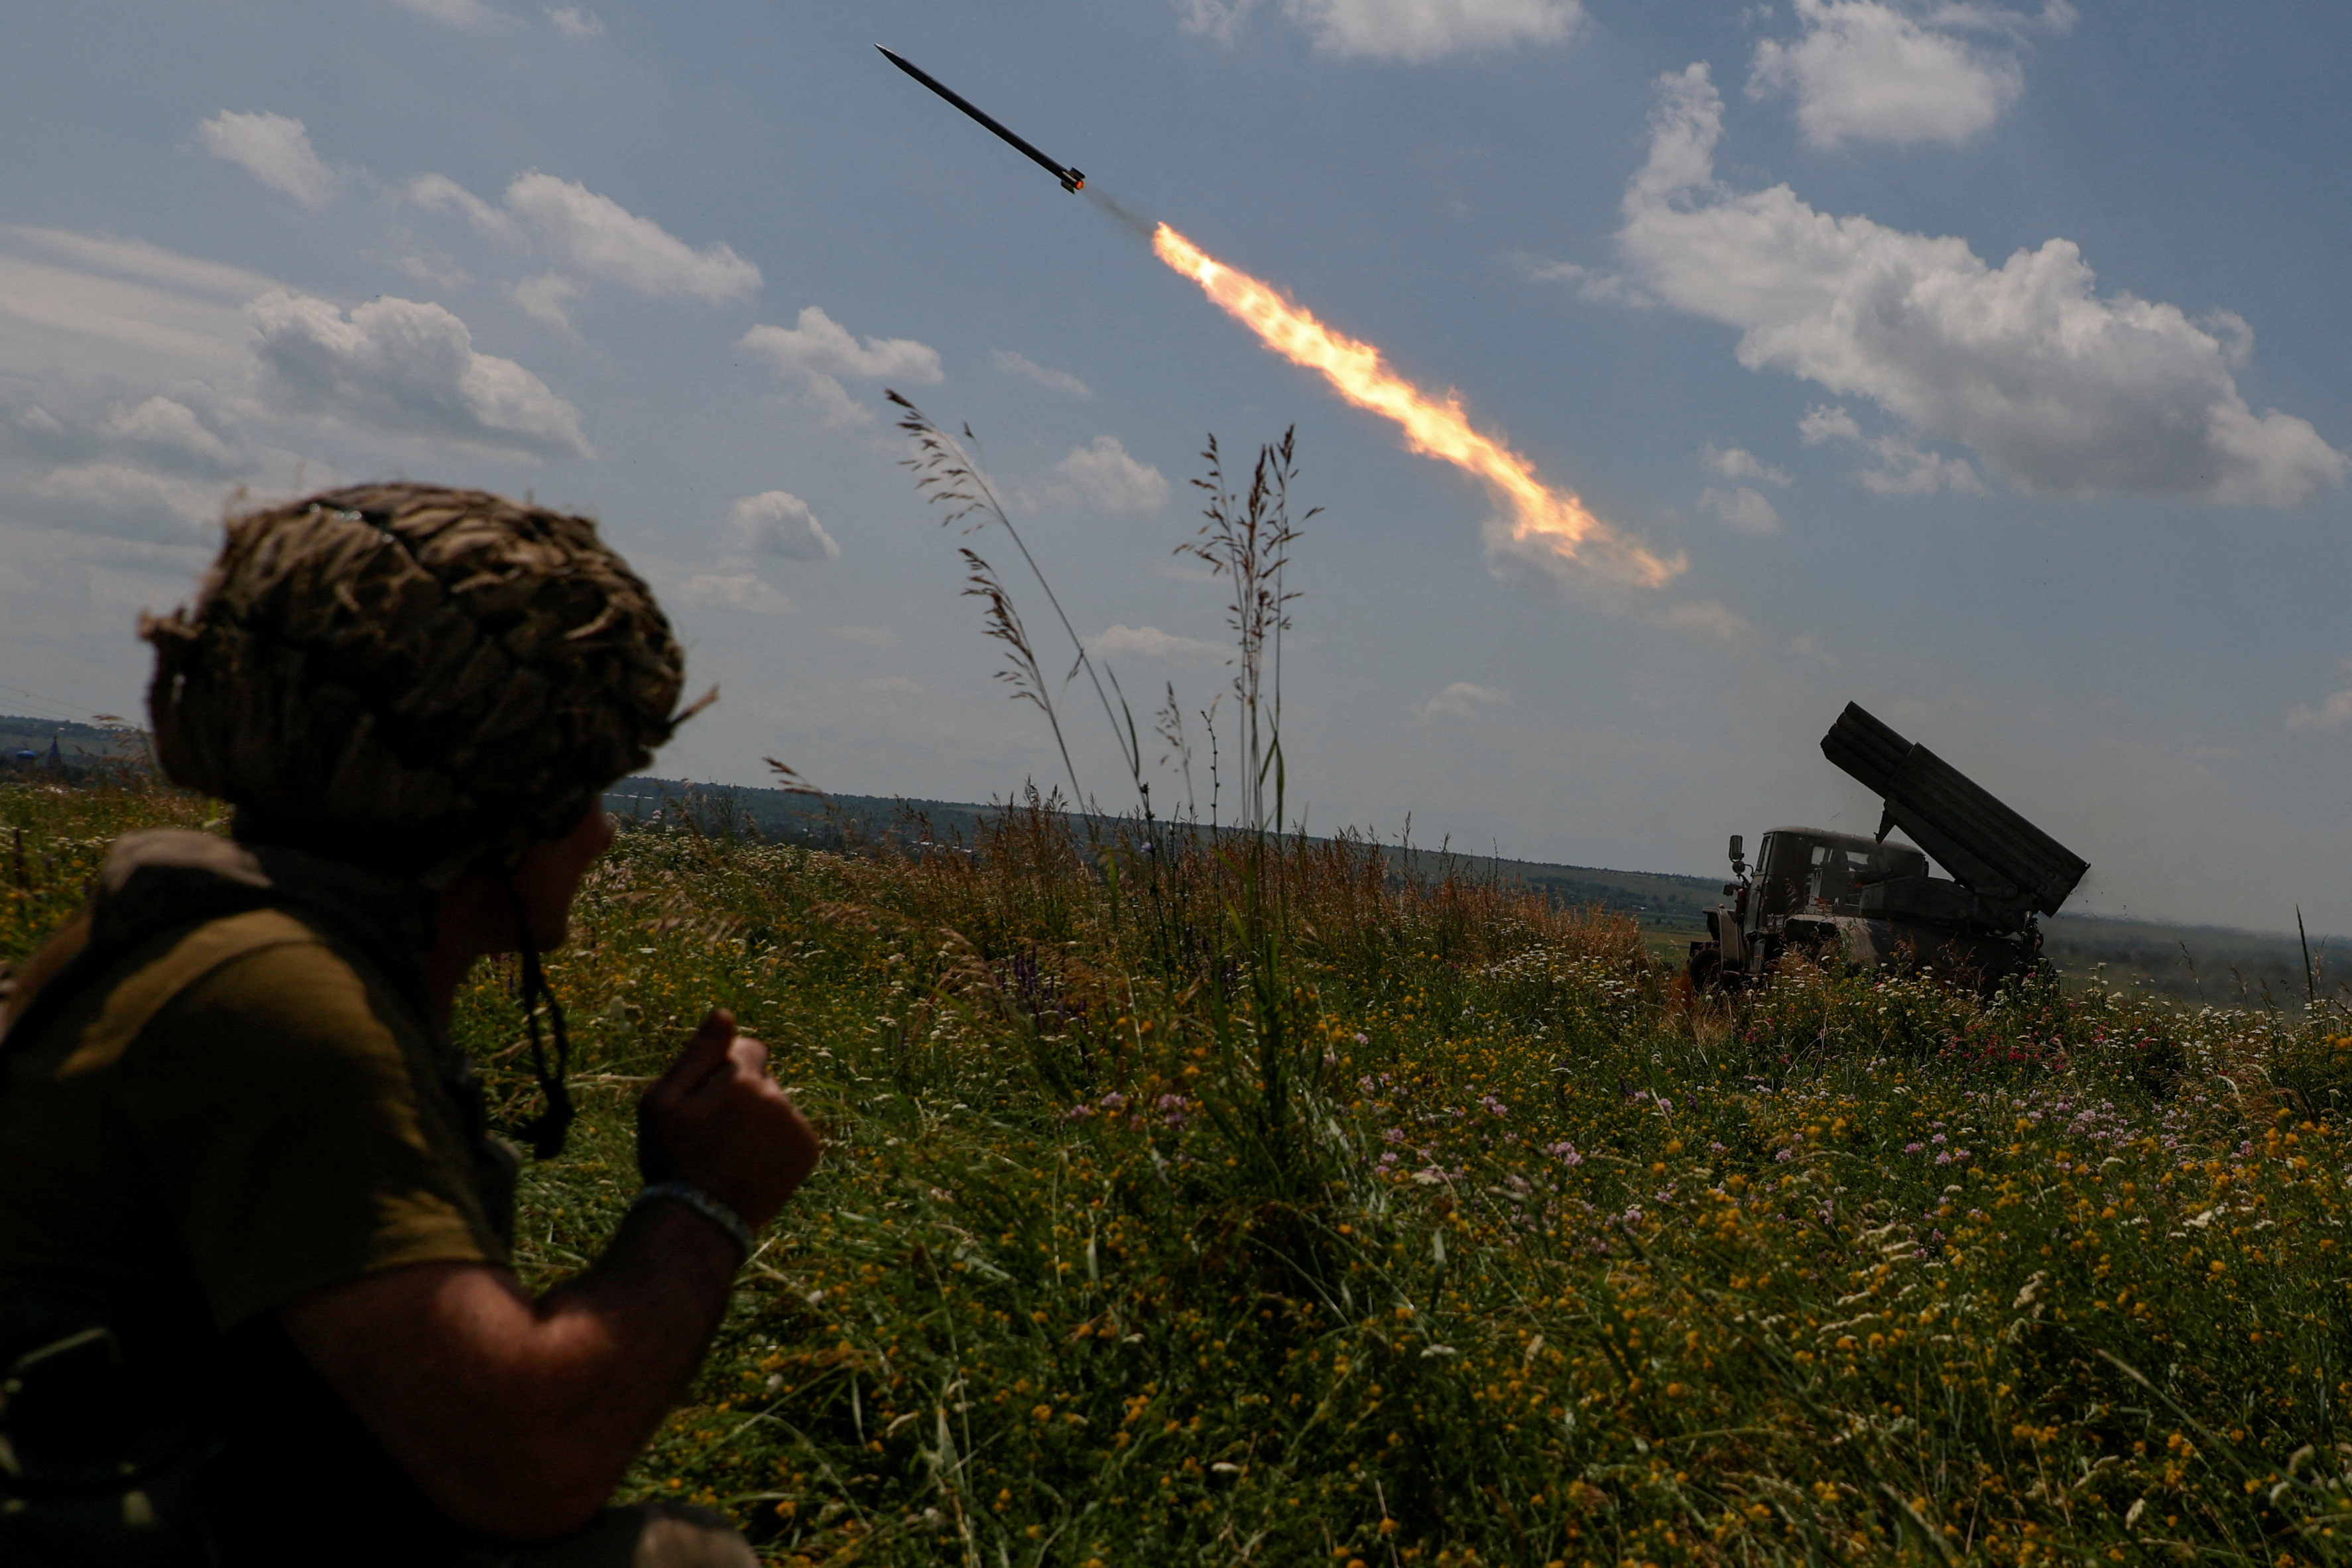 Ukrainian servicemen fire a BM-21 Grad multiple launch rocket system towards Russian troops near a front line in Zaporizhzhia region